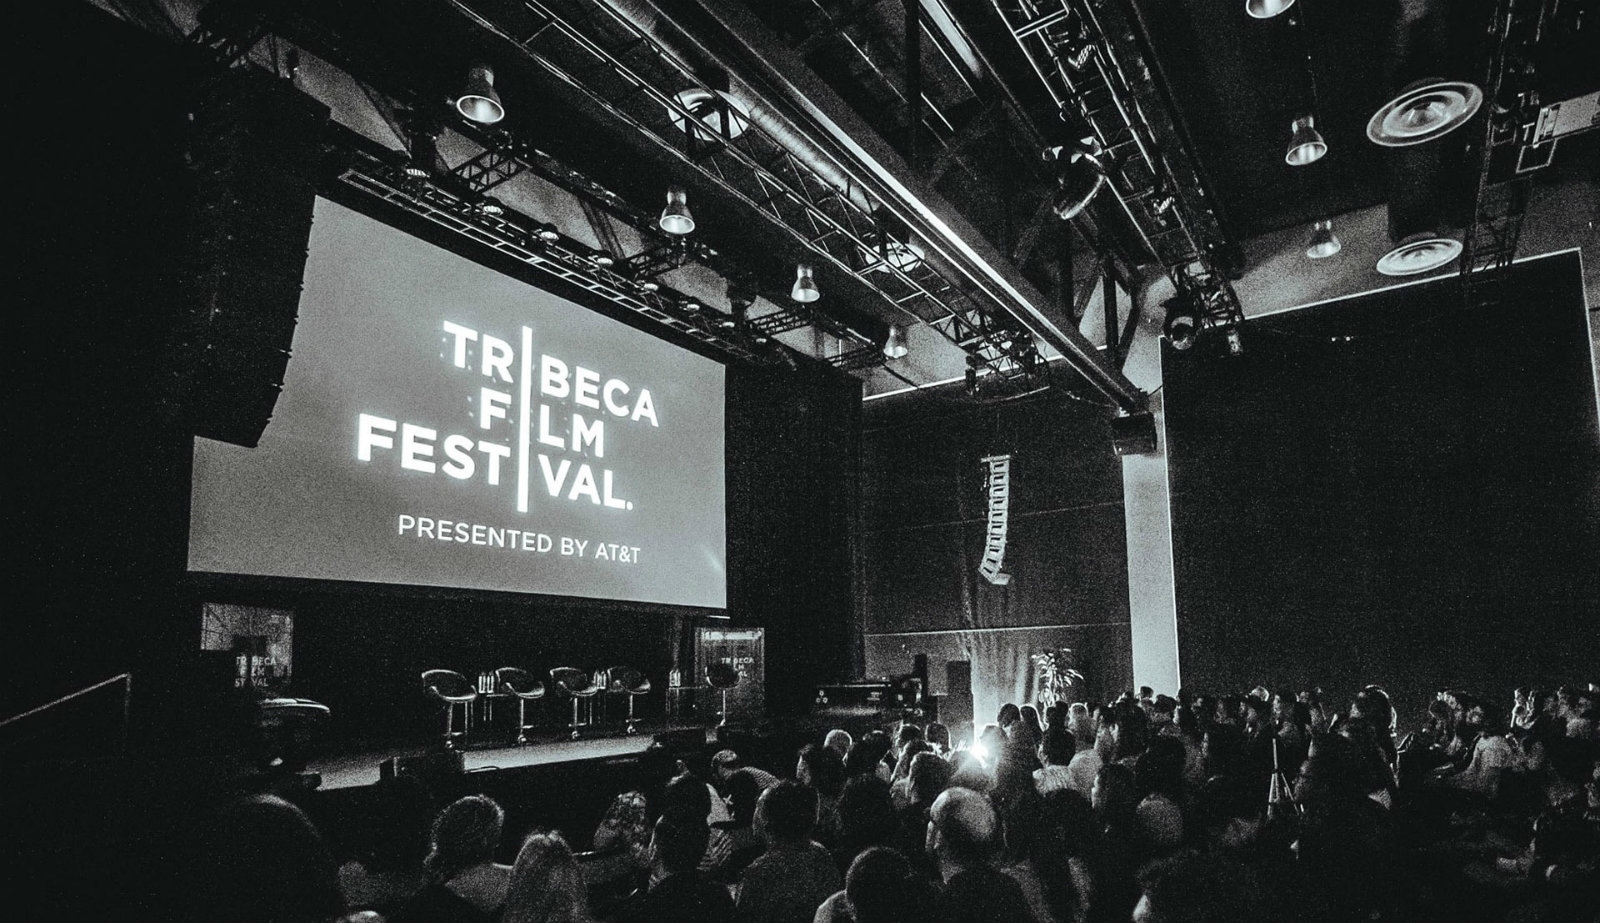 Stream select Tribeca Film Festival talks live on Facebook | DeviceDaily.com